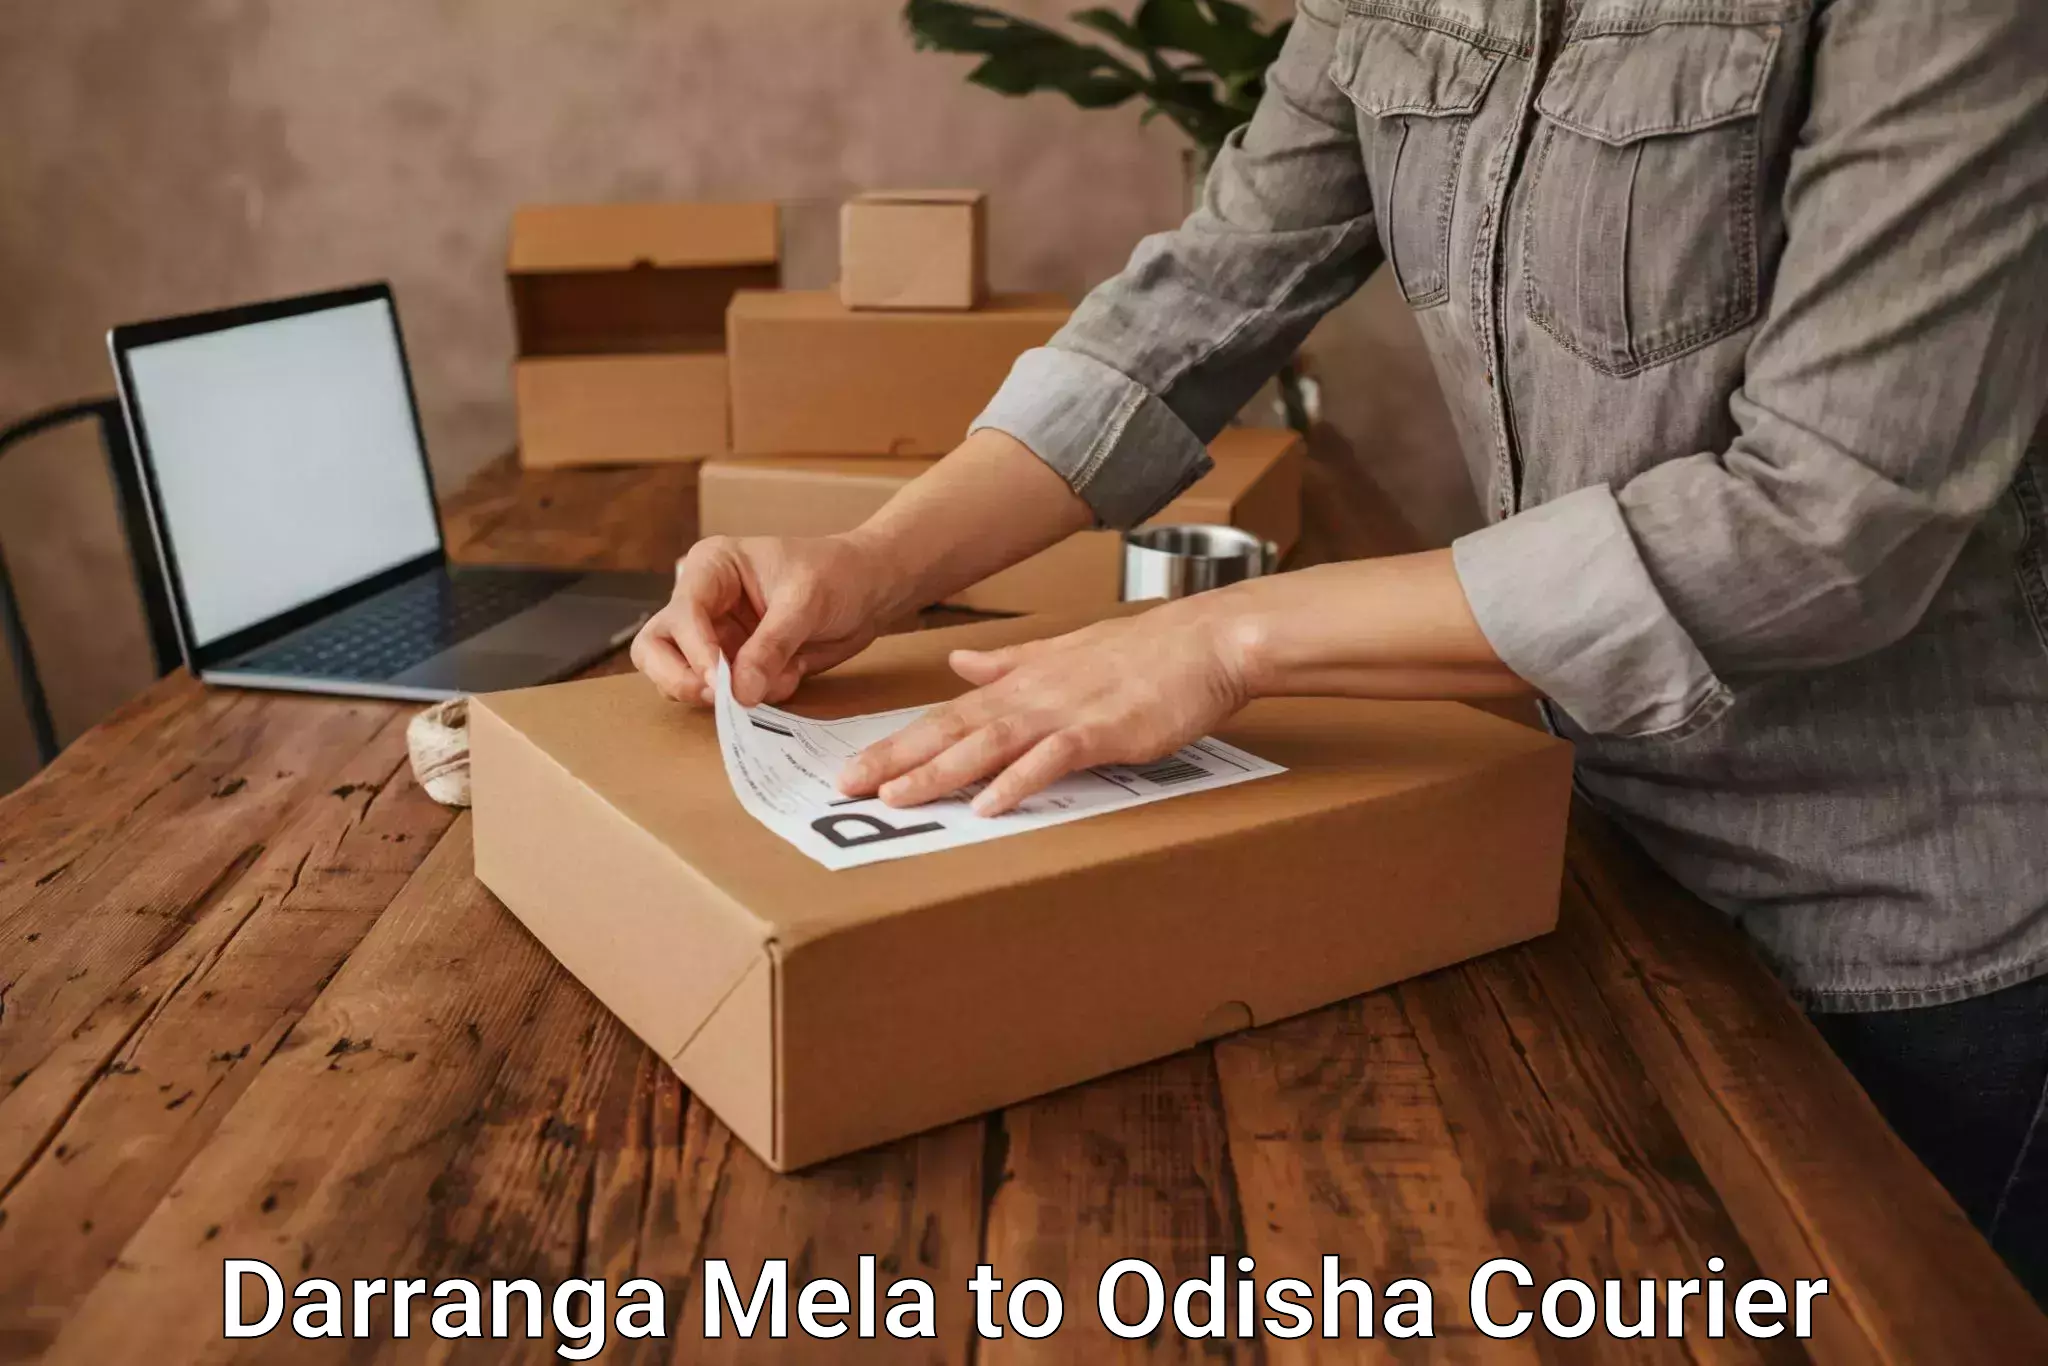 Courier service booking Darranga Mela to Raighar